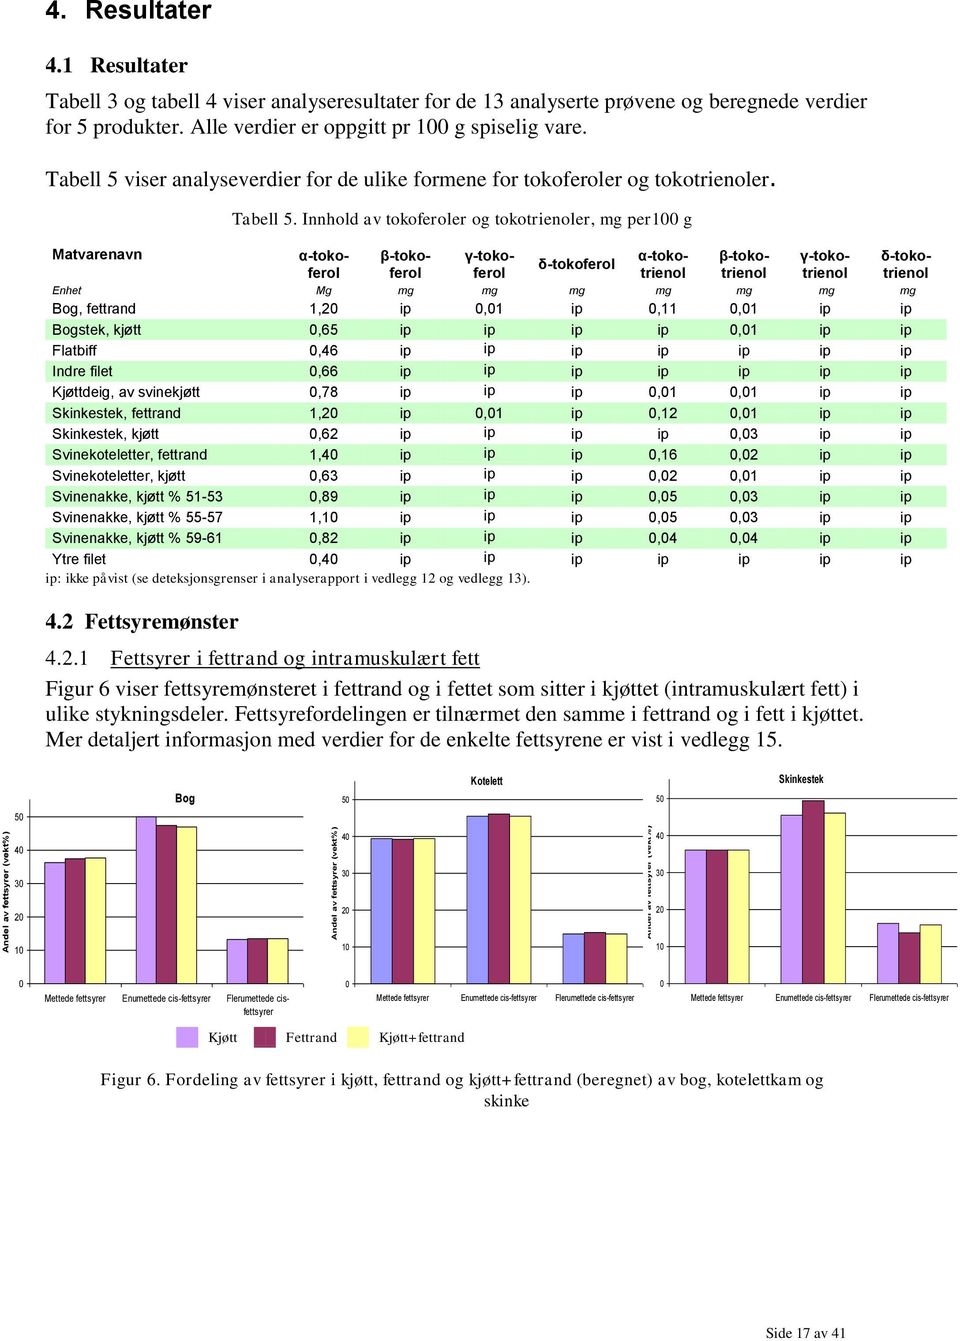 Tabell 5 viser analyseverdier for de ulike formene for tokoferoler og tokotrienoler. Matvarenavn Tabell 5.